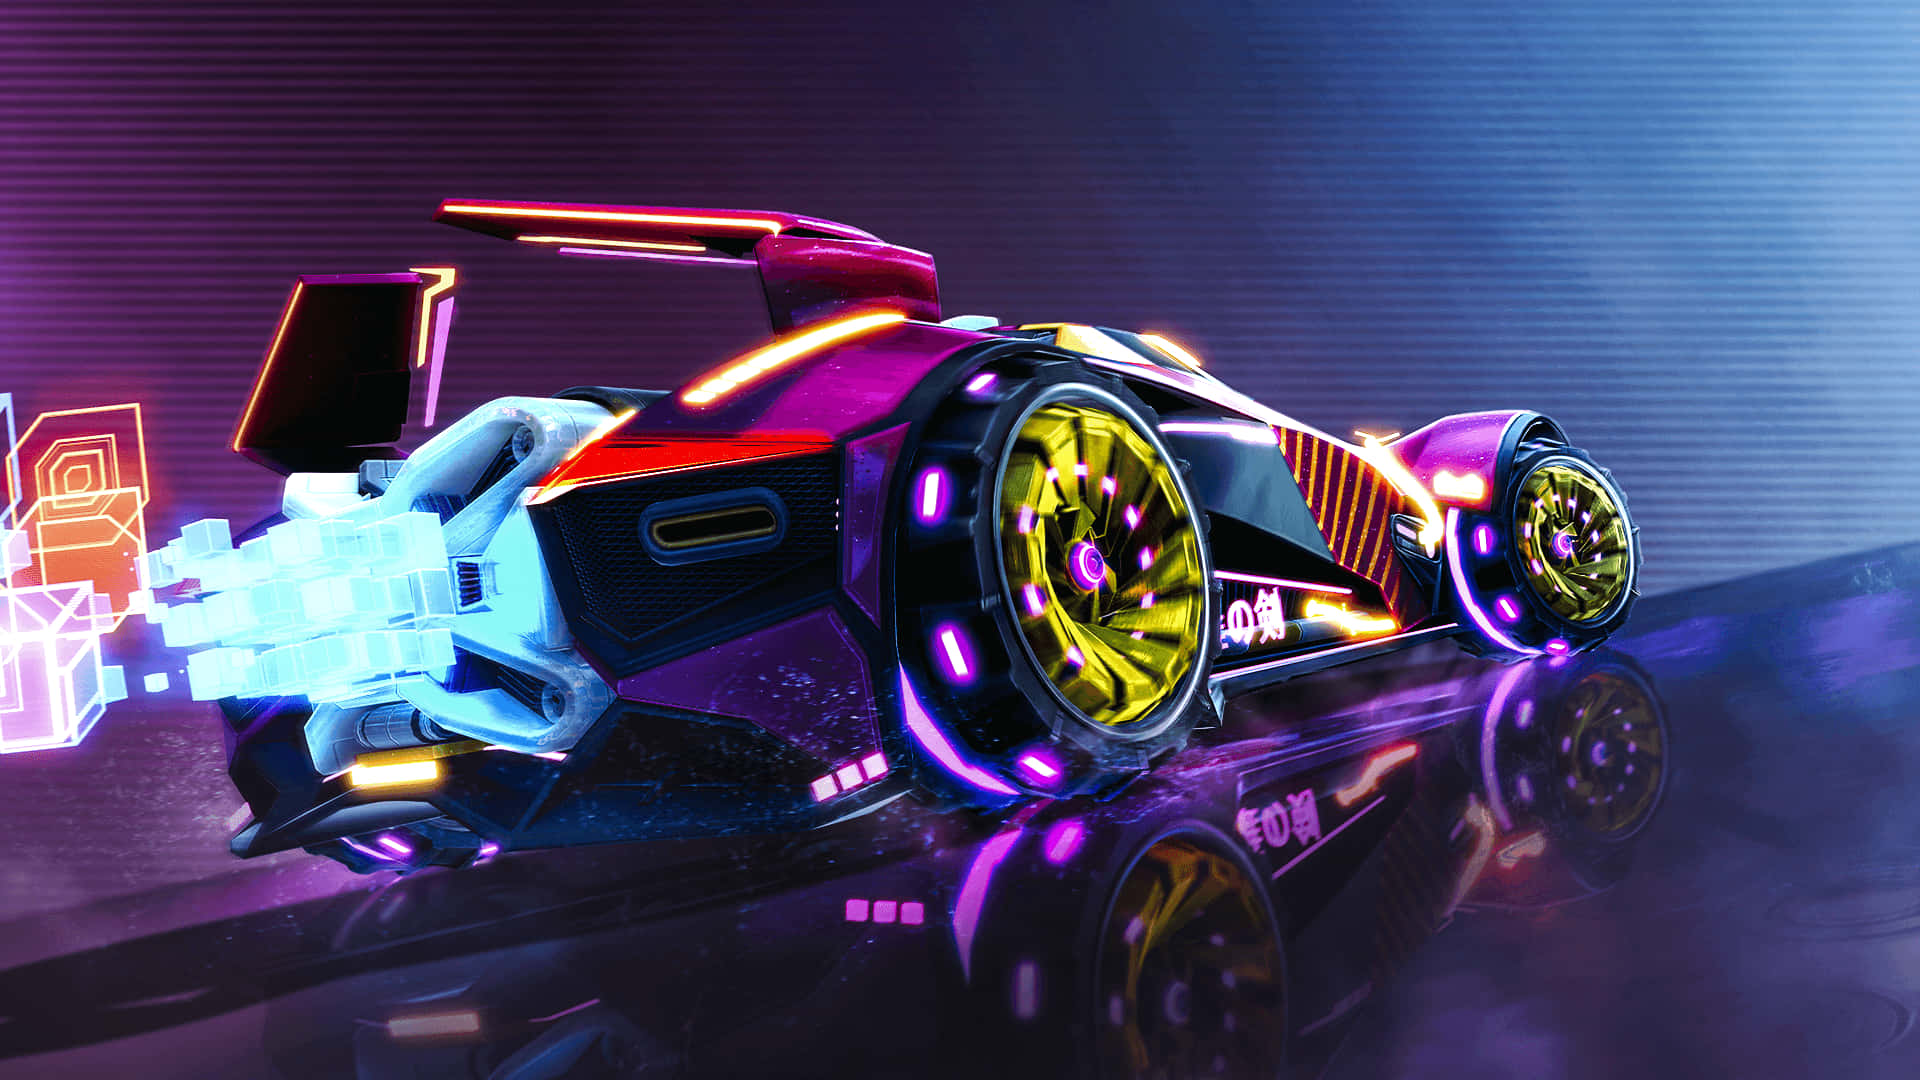 720p Rocket League Background Colorful Battle Car Background